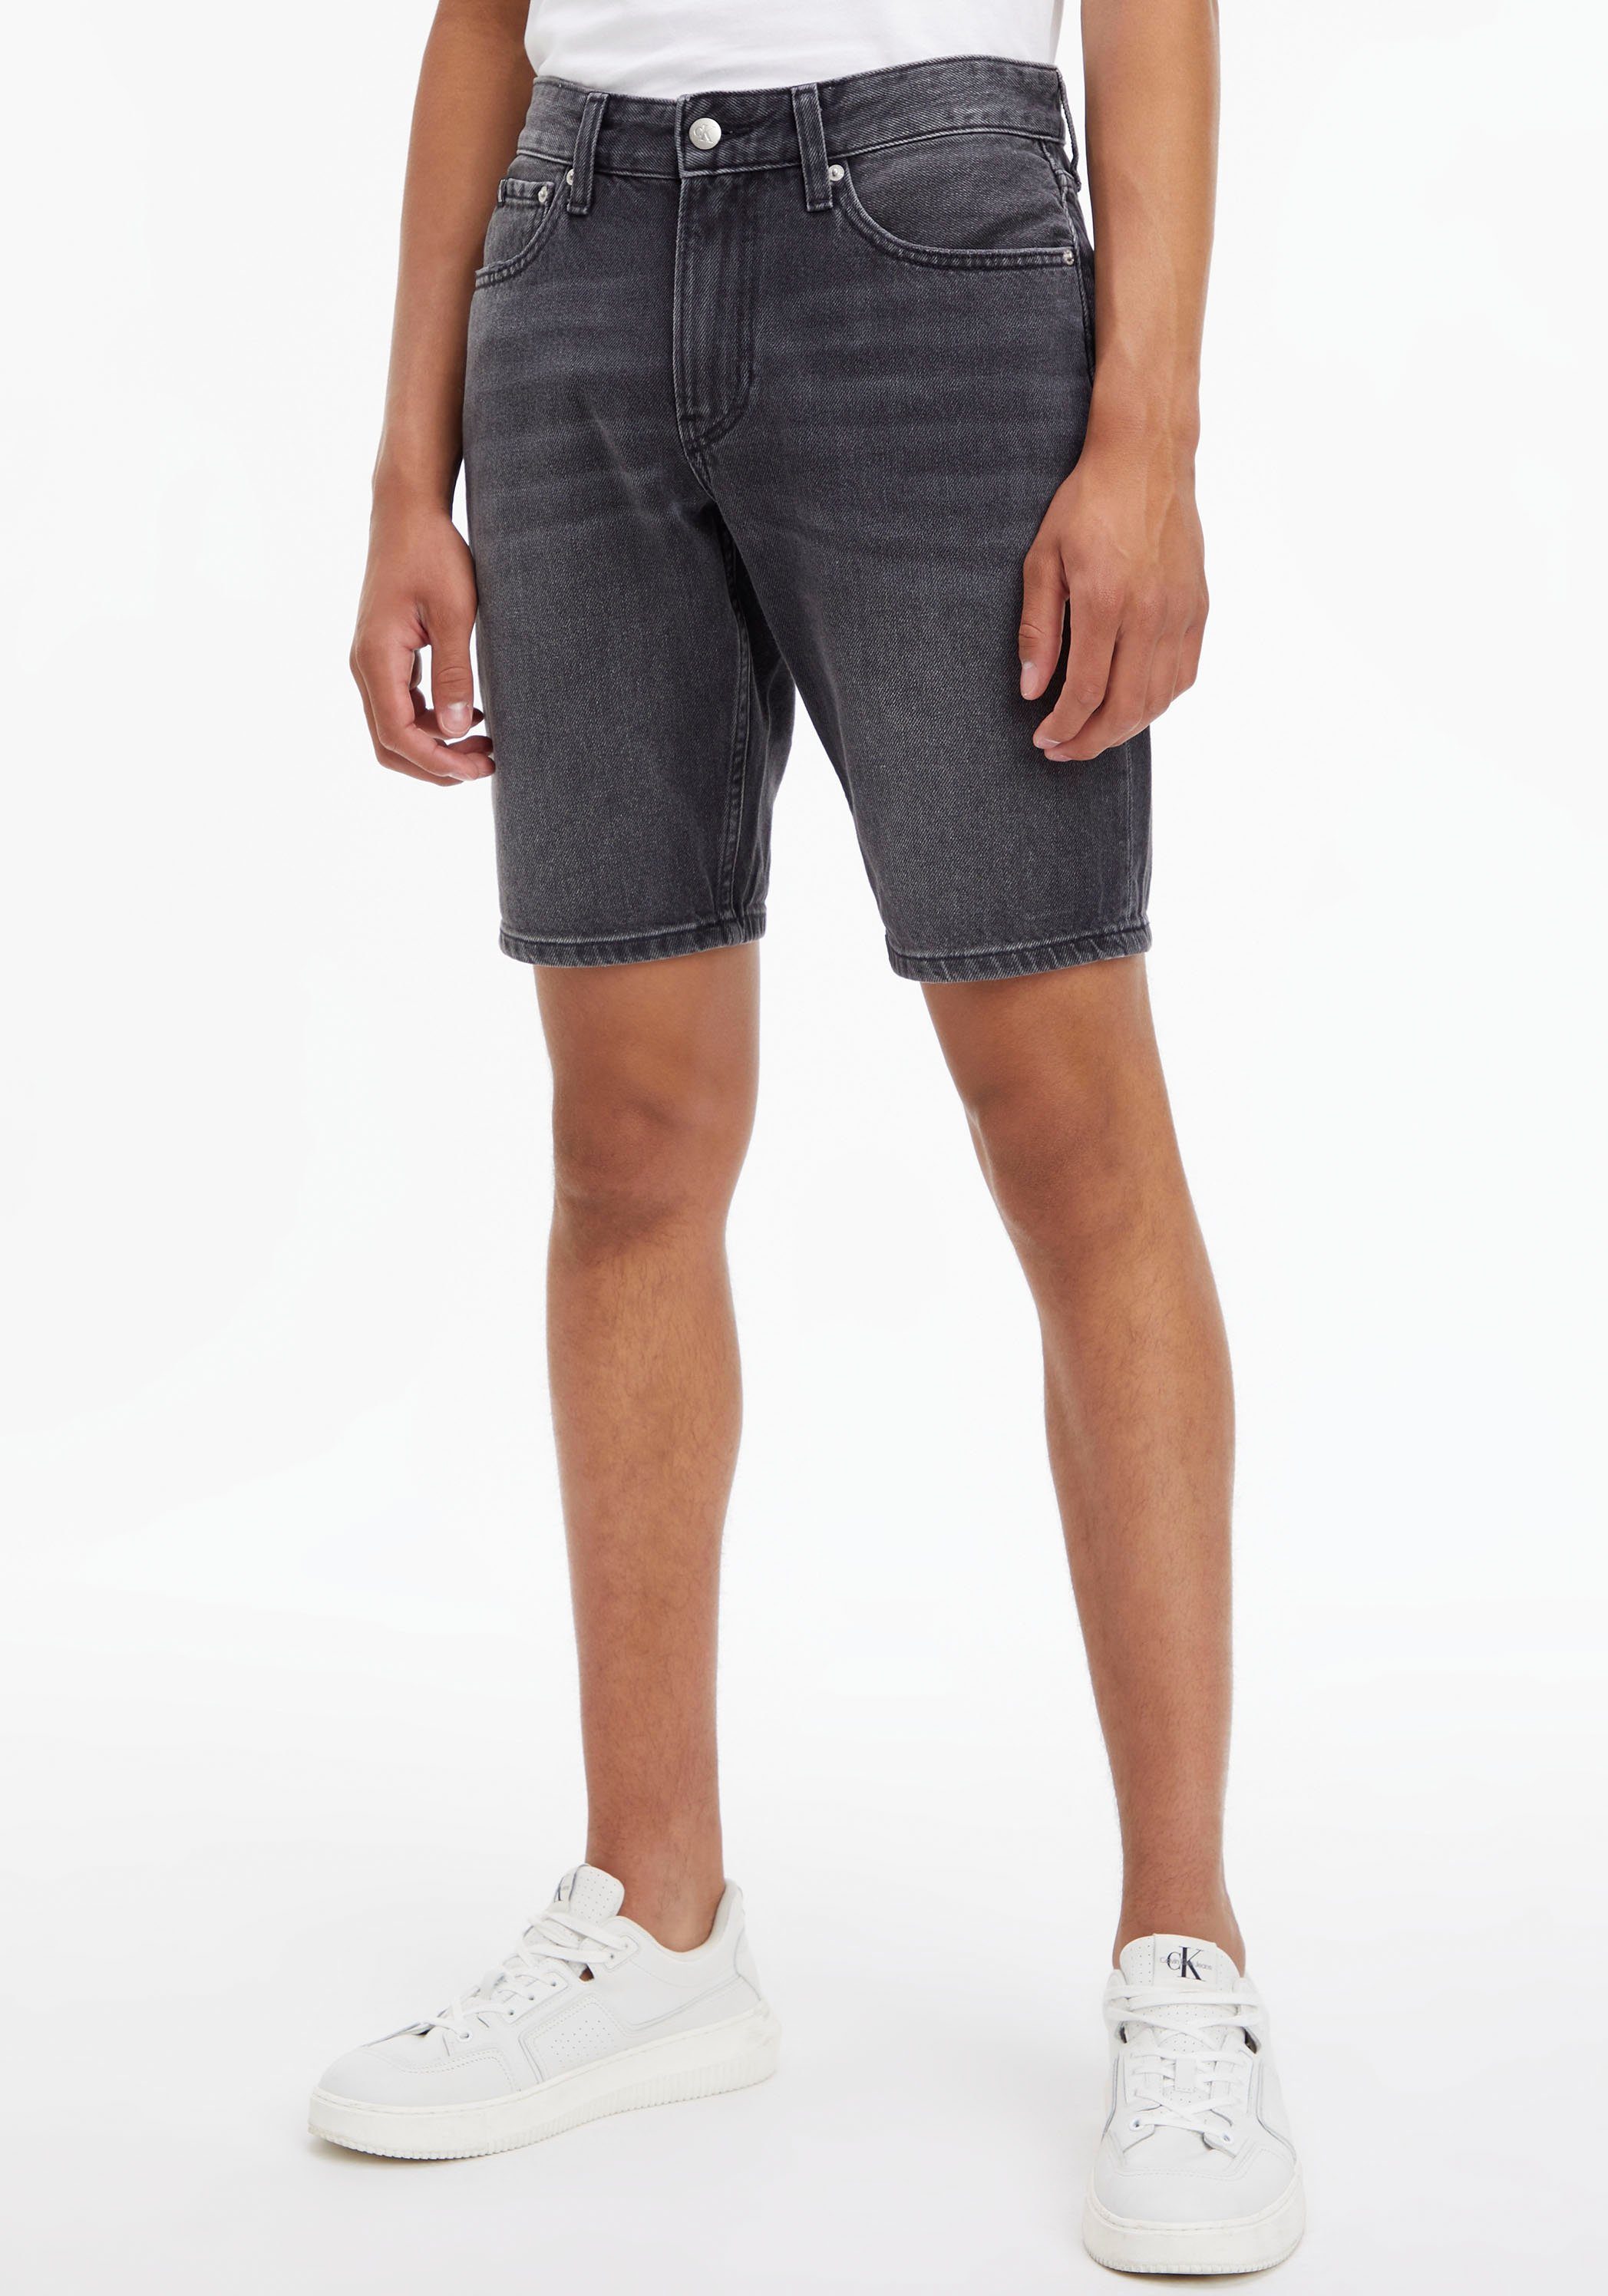 Calvin Klein Jeans Bermudas in 5-Pocket-Form Denim Black